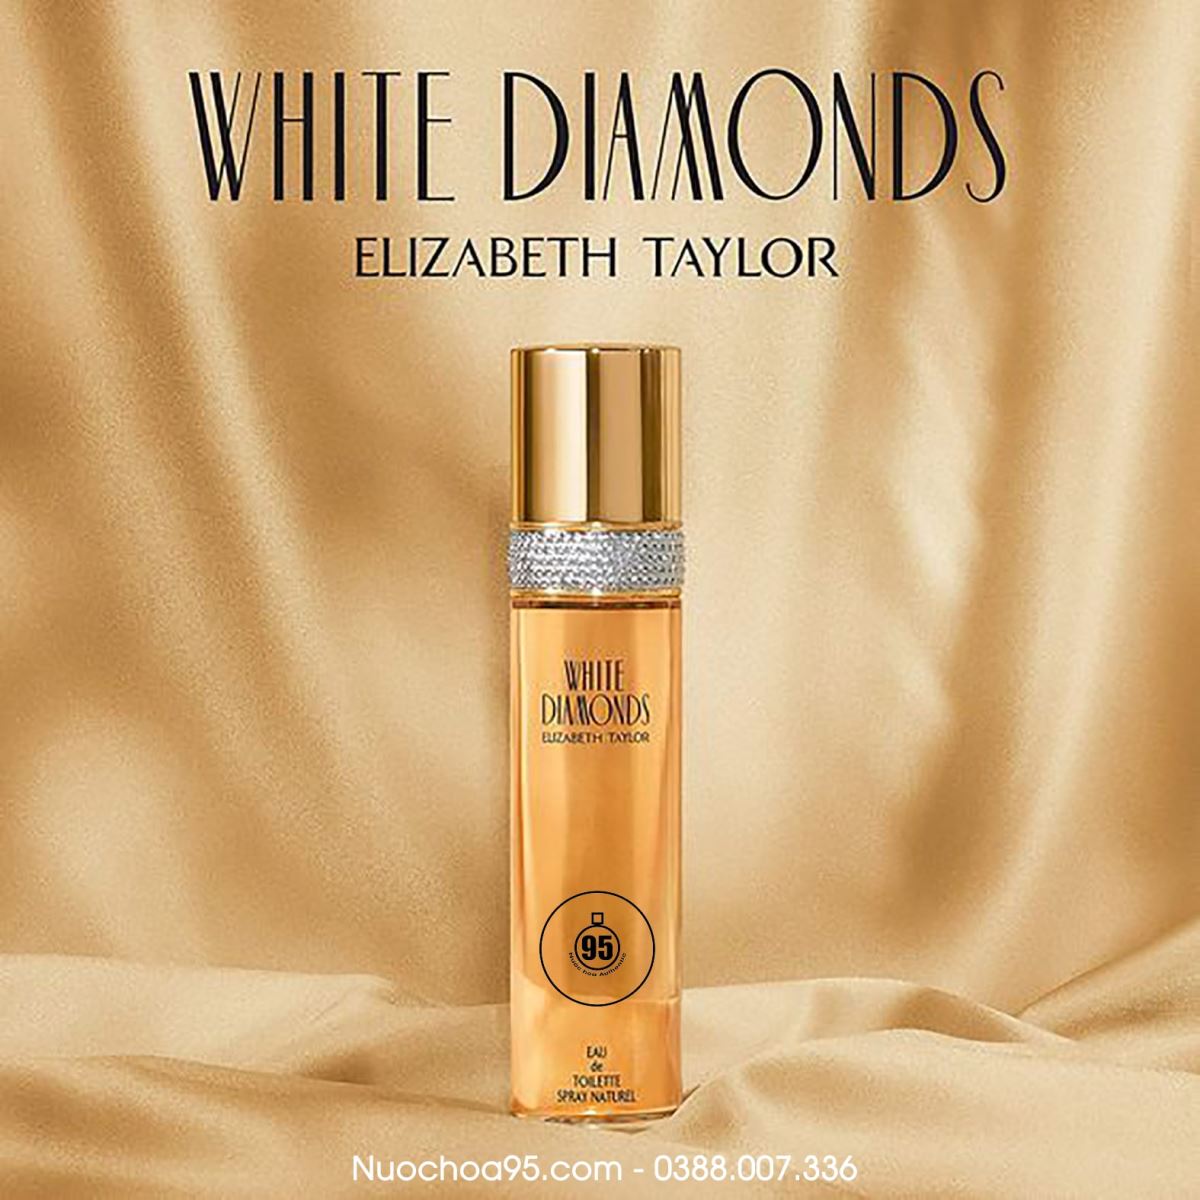 Nước hoa White Diamonds Elizabeth Taylor  - Ảnh 2